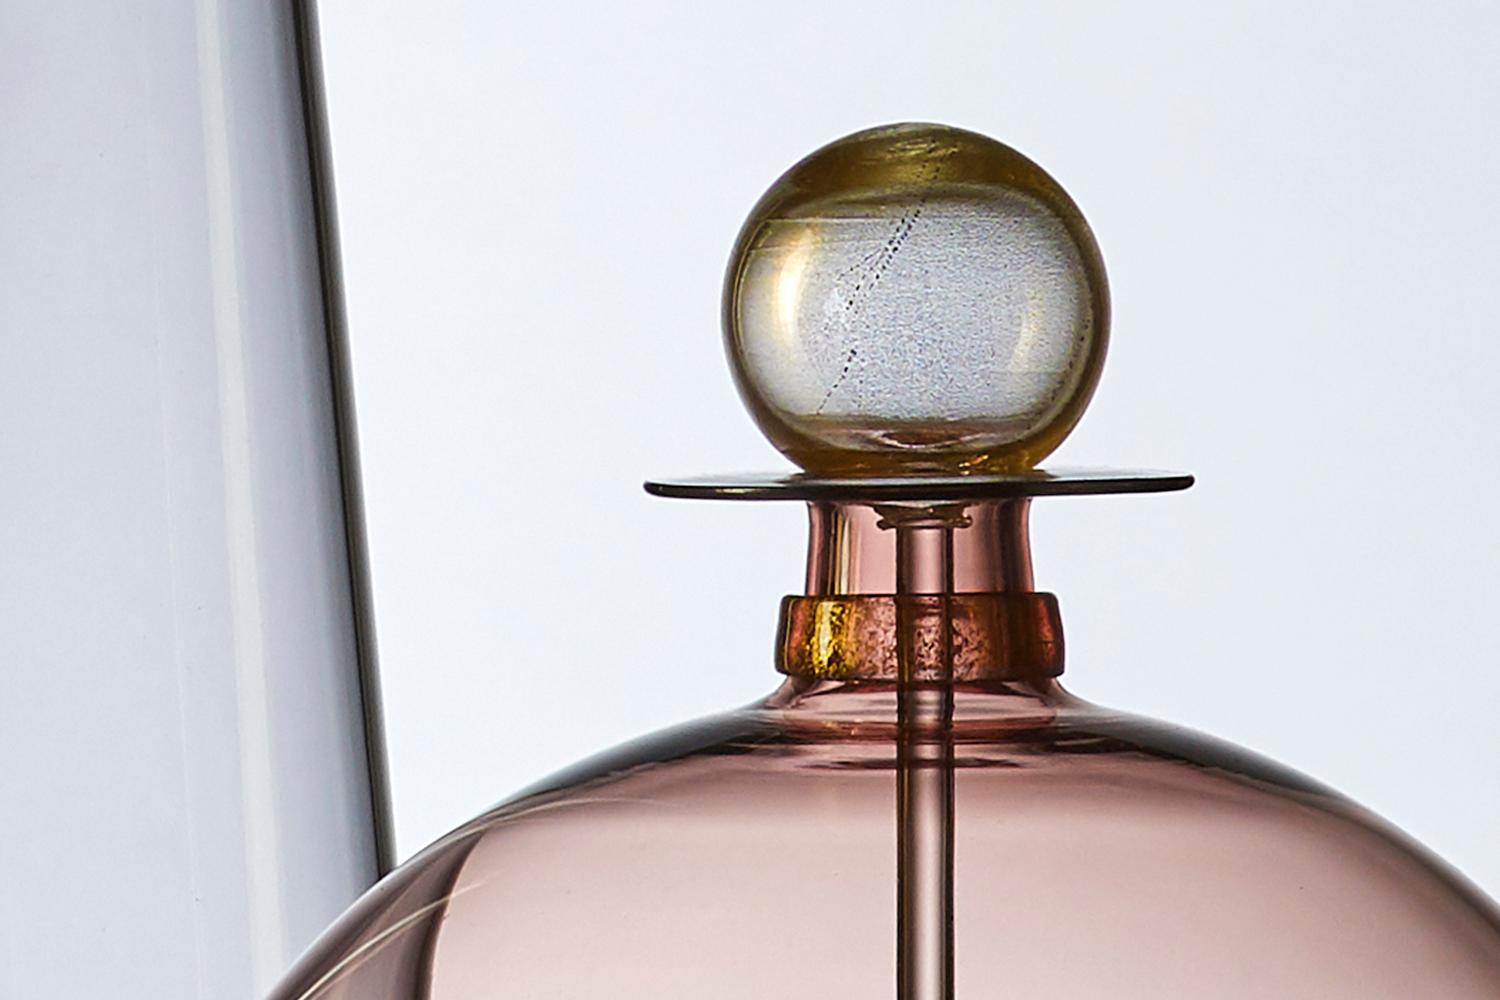 Die modernistische:: mundgeblasene Jewel Bottle von Vetro Vero zeichnet sich durch rosa getöntes Glas und goldschimmernde Details aus. Die rosafarbene Karaffe ist von Apothekerkollektionen und Dekantern des Mid-Century Modern Designs inspiriert und